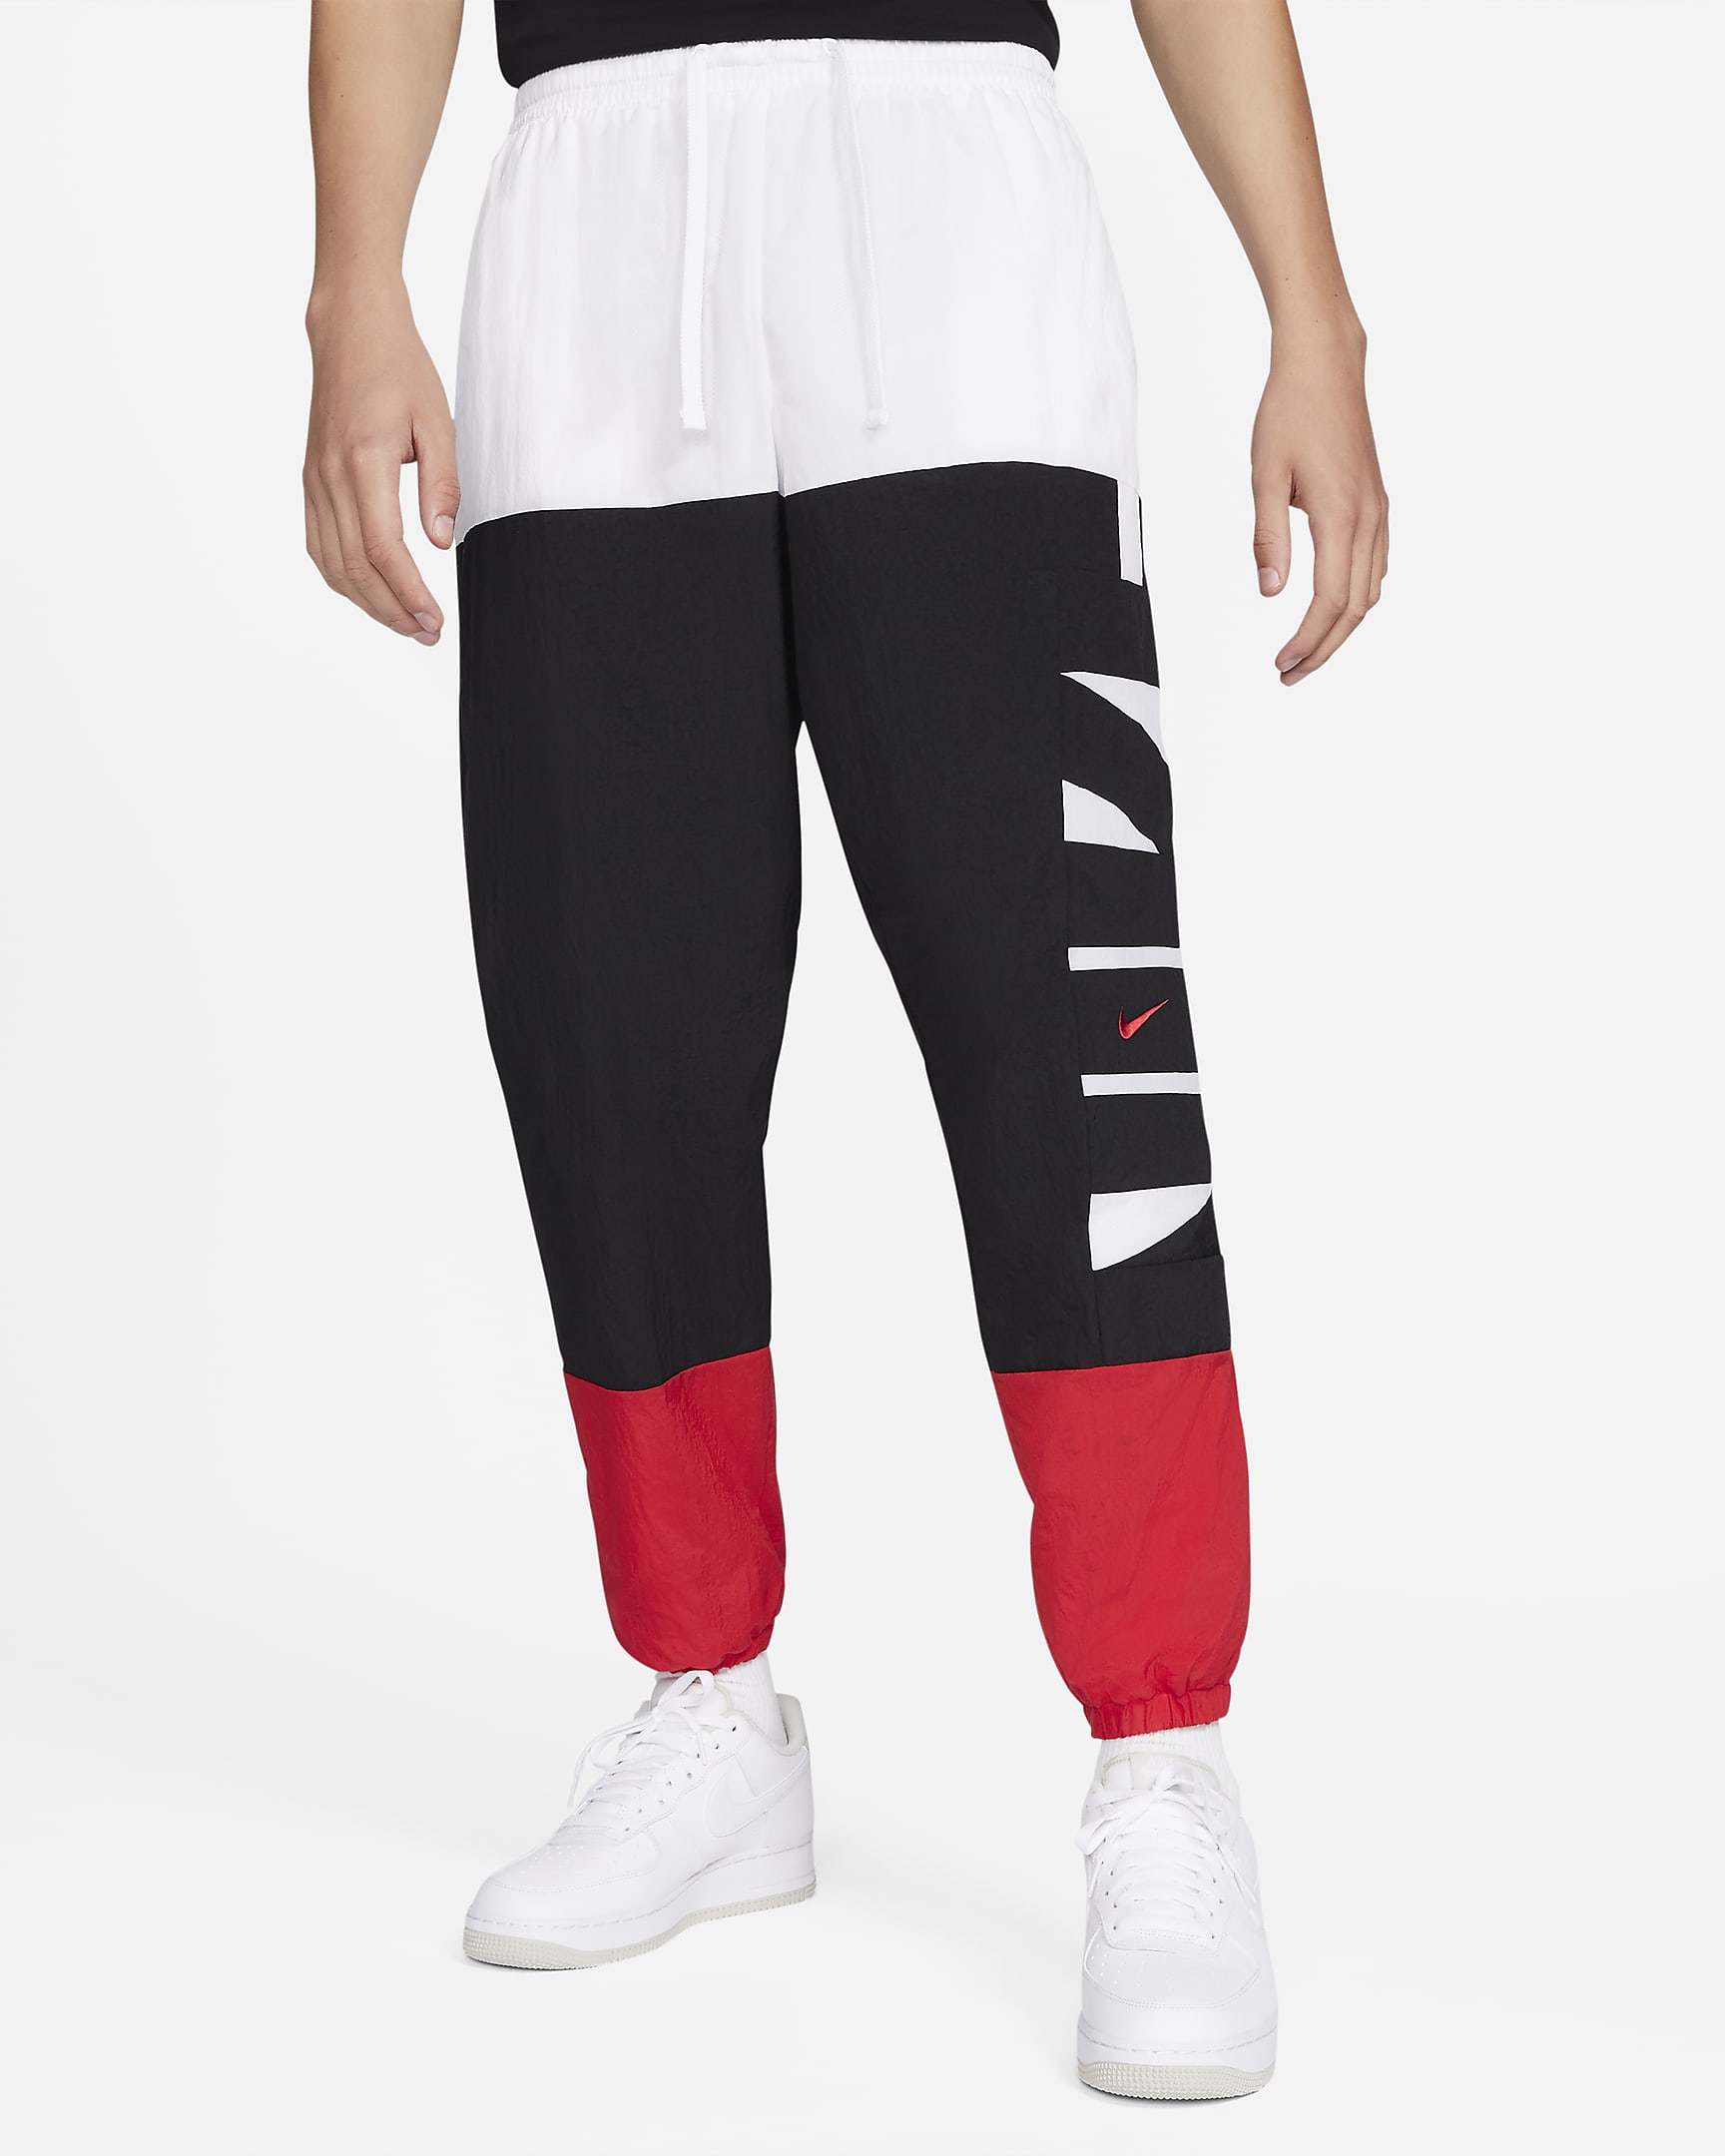 Nike Dri-FIT Men\'s Basketball Pants White/Black/University Red/Black